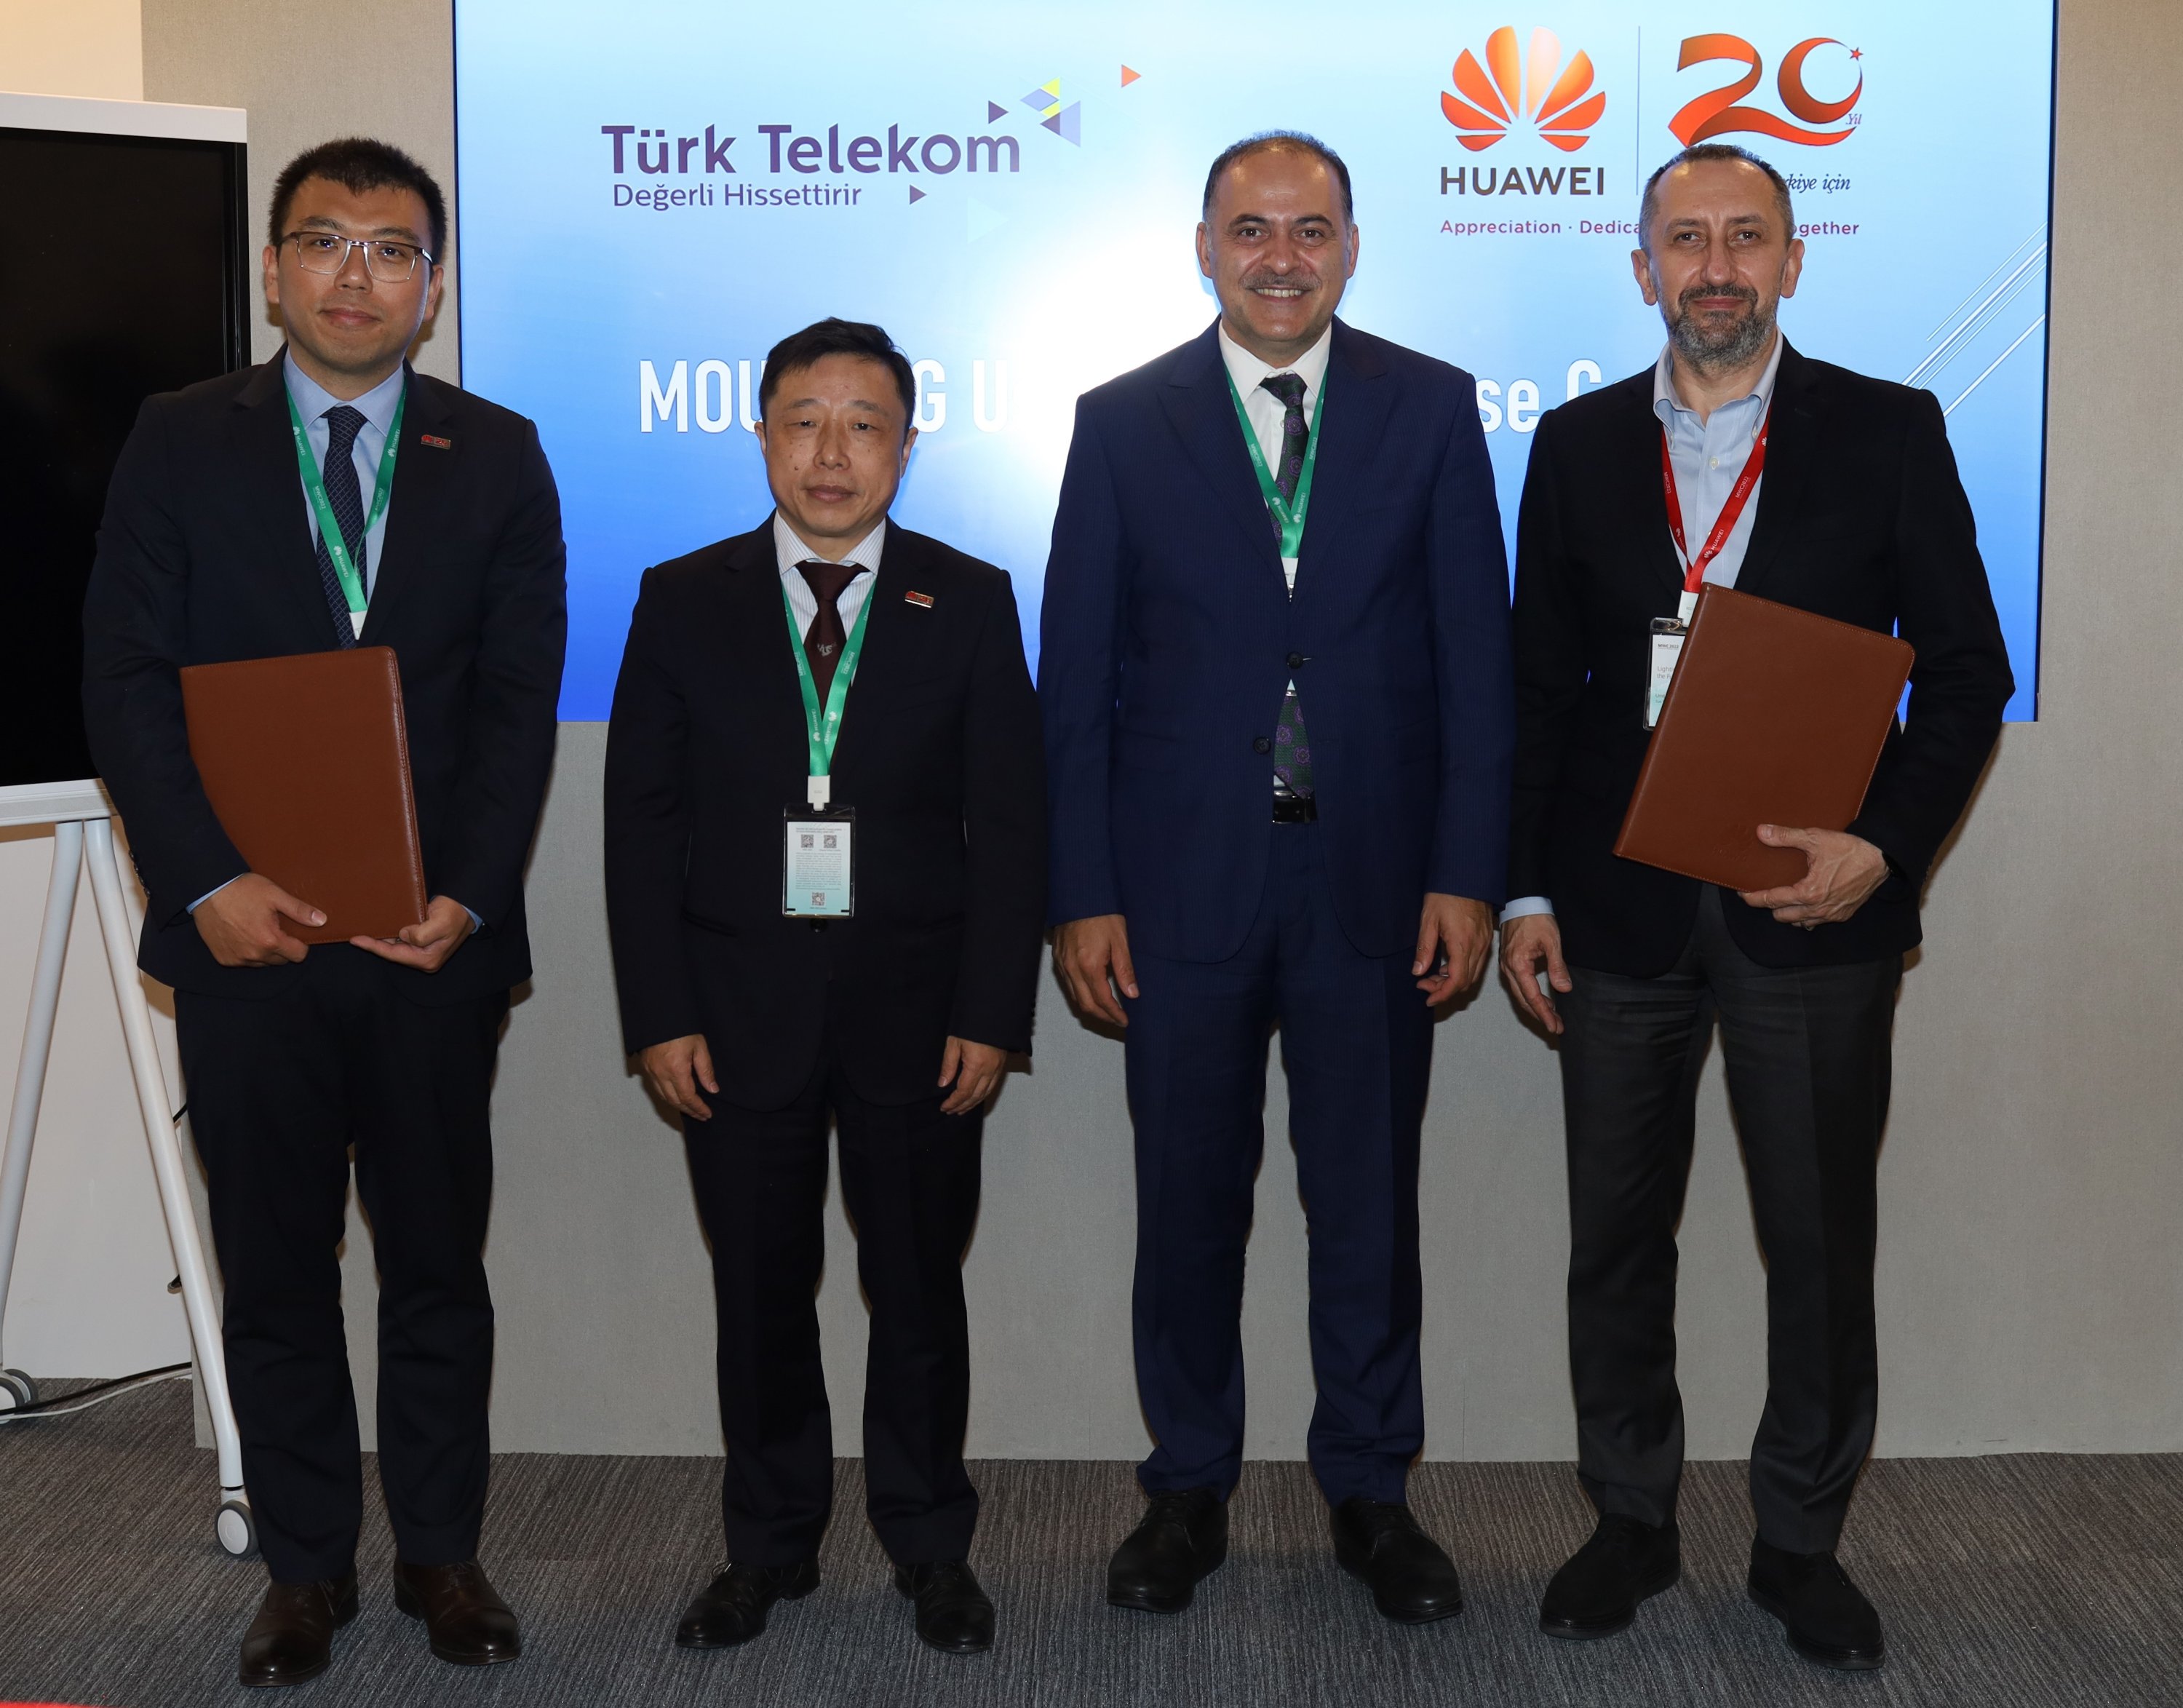 Dari kiri ke kanan, Manajer Umum Huawei Turki Jing Li, Tang Qibing, kepala Layanan Teknis Global di Huawei, Wakil Menteri Transportasi dan Infrastruktur Turki mer Fatih Sayan dan mit nal, CEO Türk Telekom.  (Sumber dari Türk Telekom)